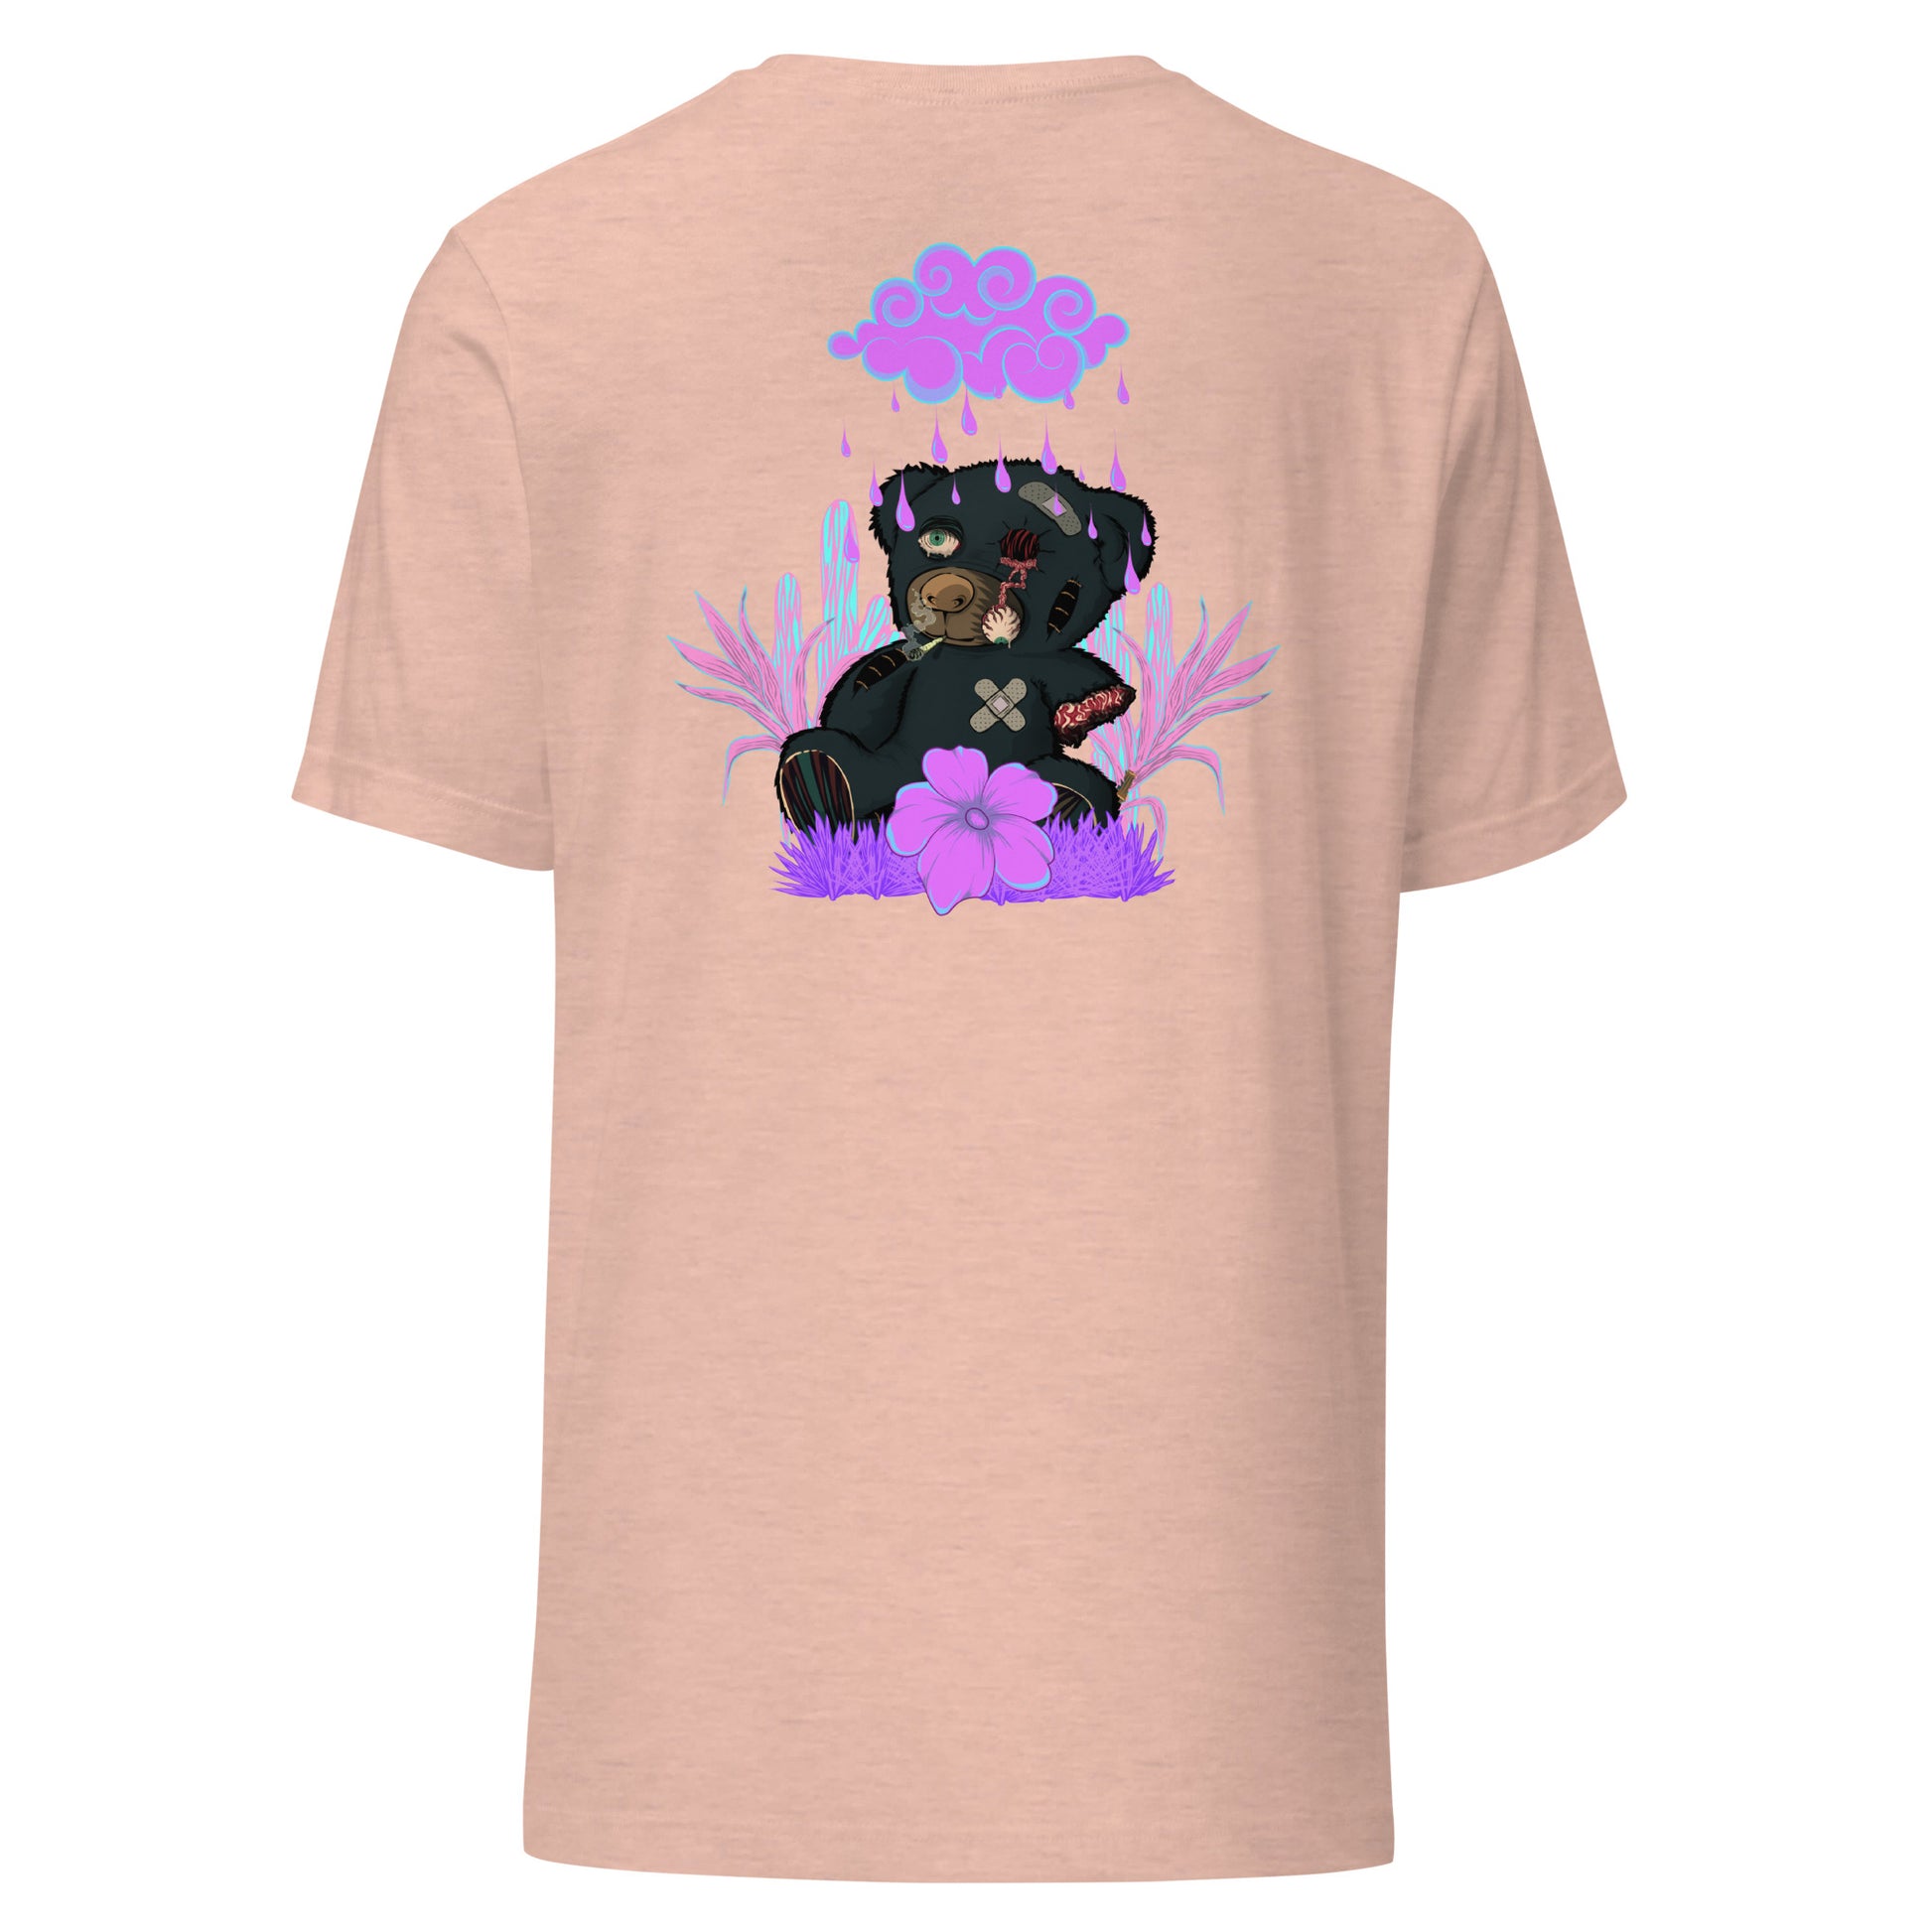 T-Shirt trasher not for kids effet néon weed et motif floral t-shirt de face unisex couleur rose peche